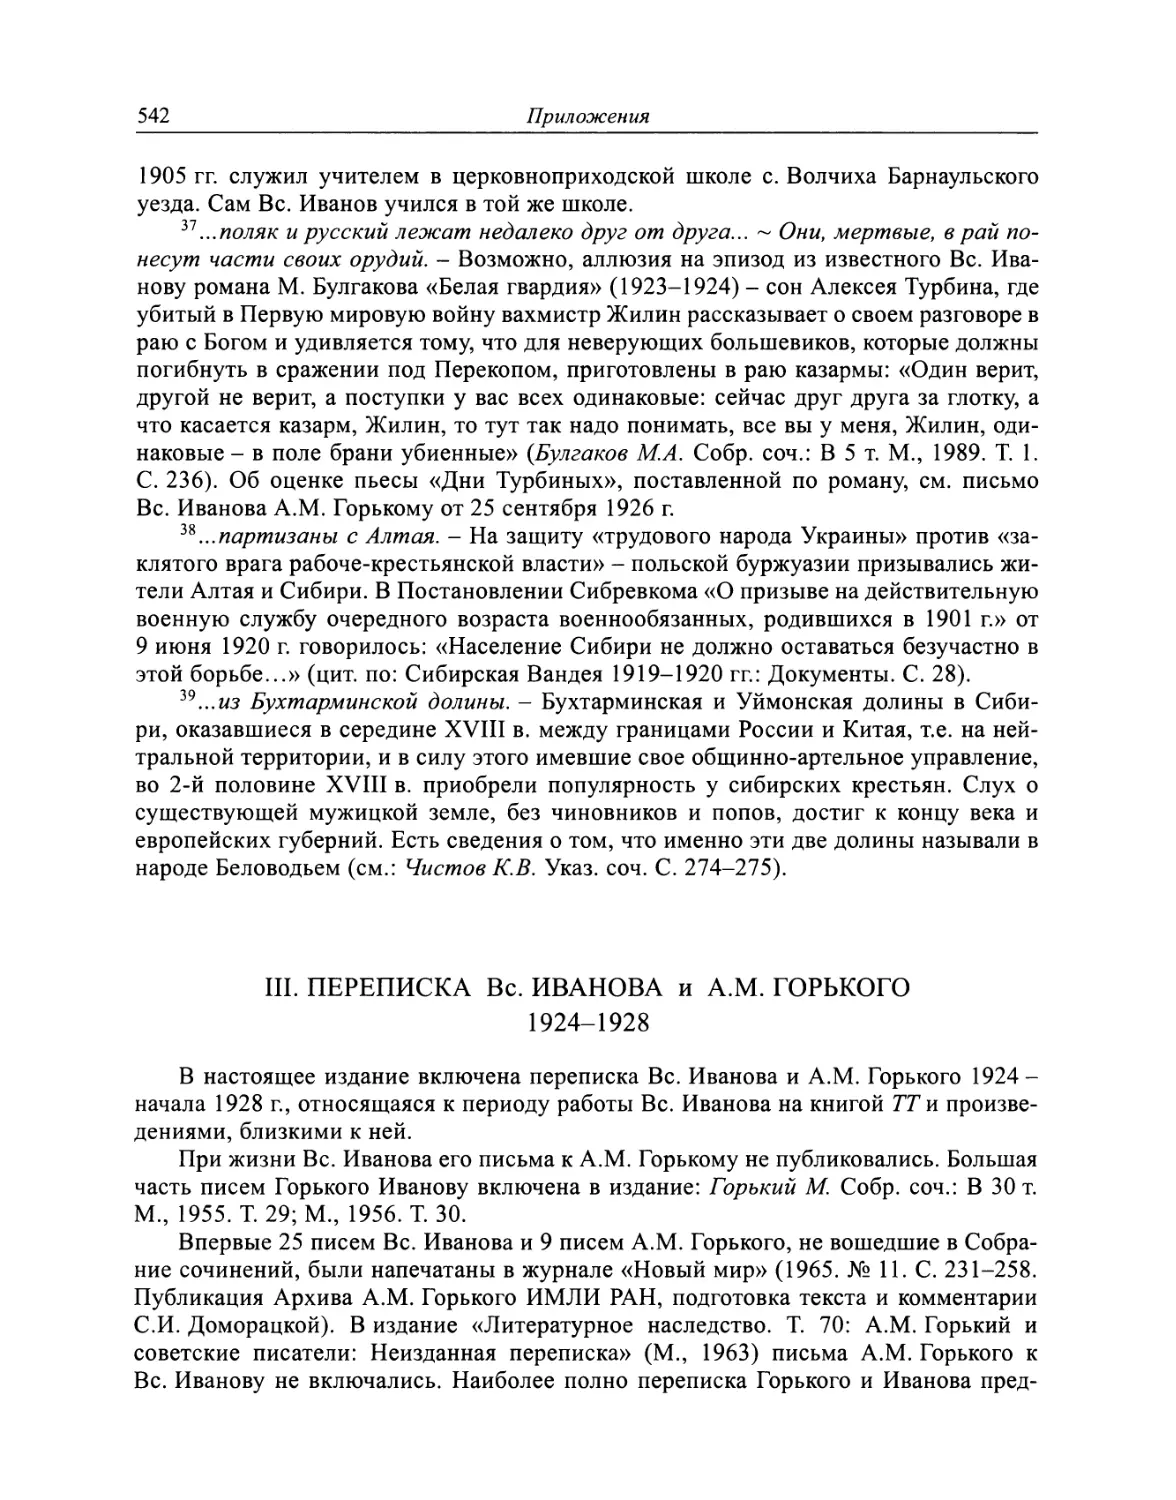 III. Переписка Вс. Иванова и A.M. Горького. 1924-1928